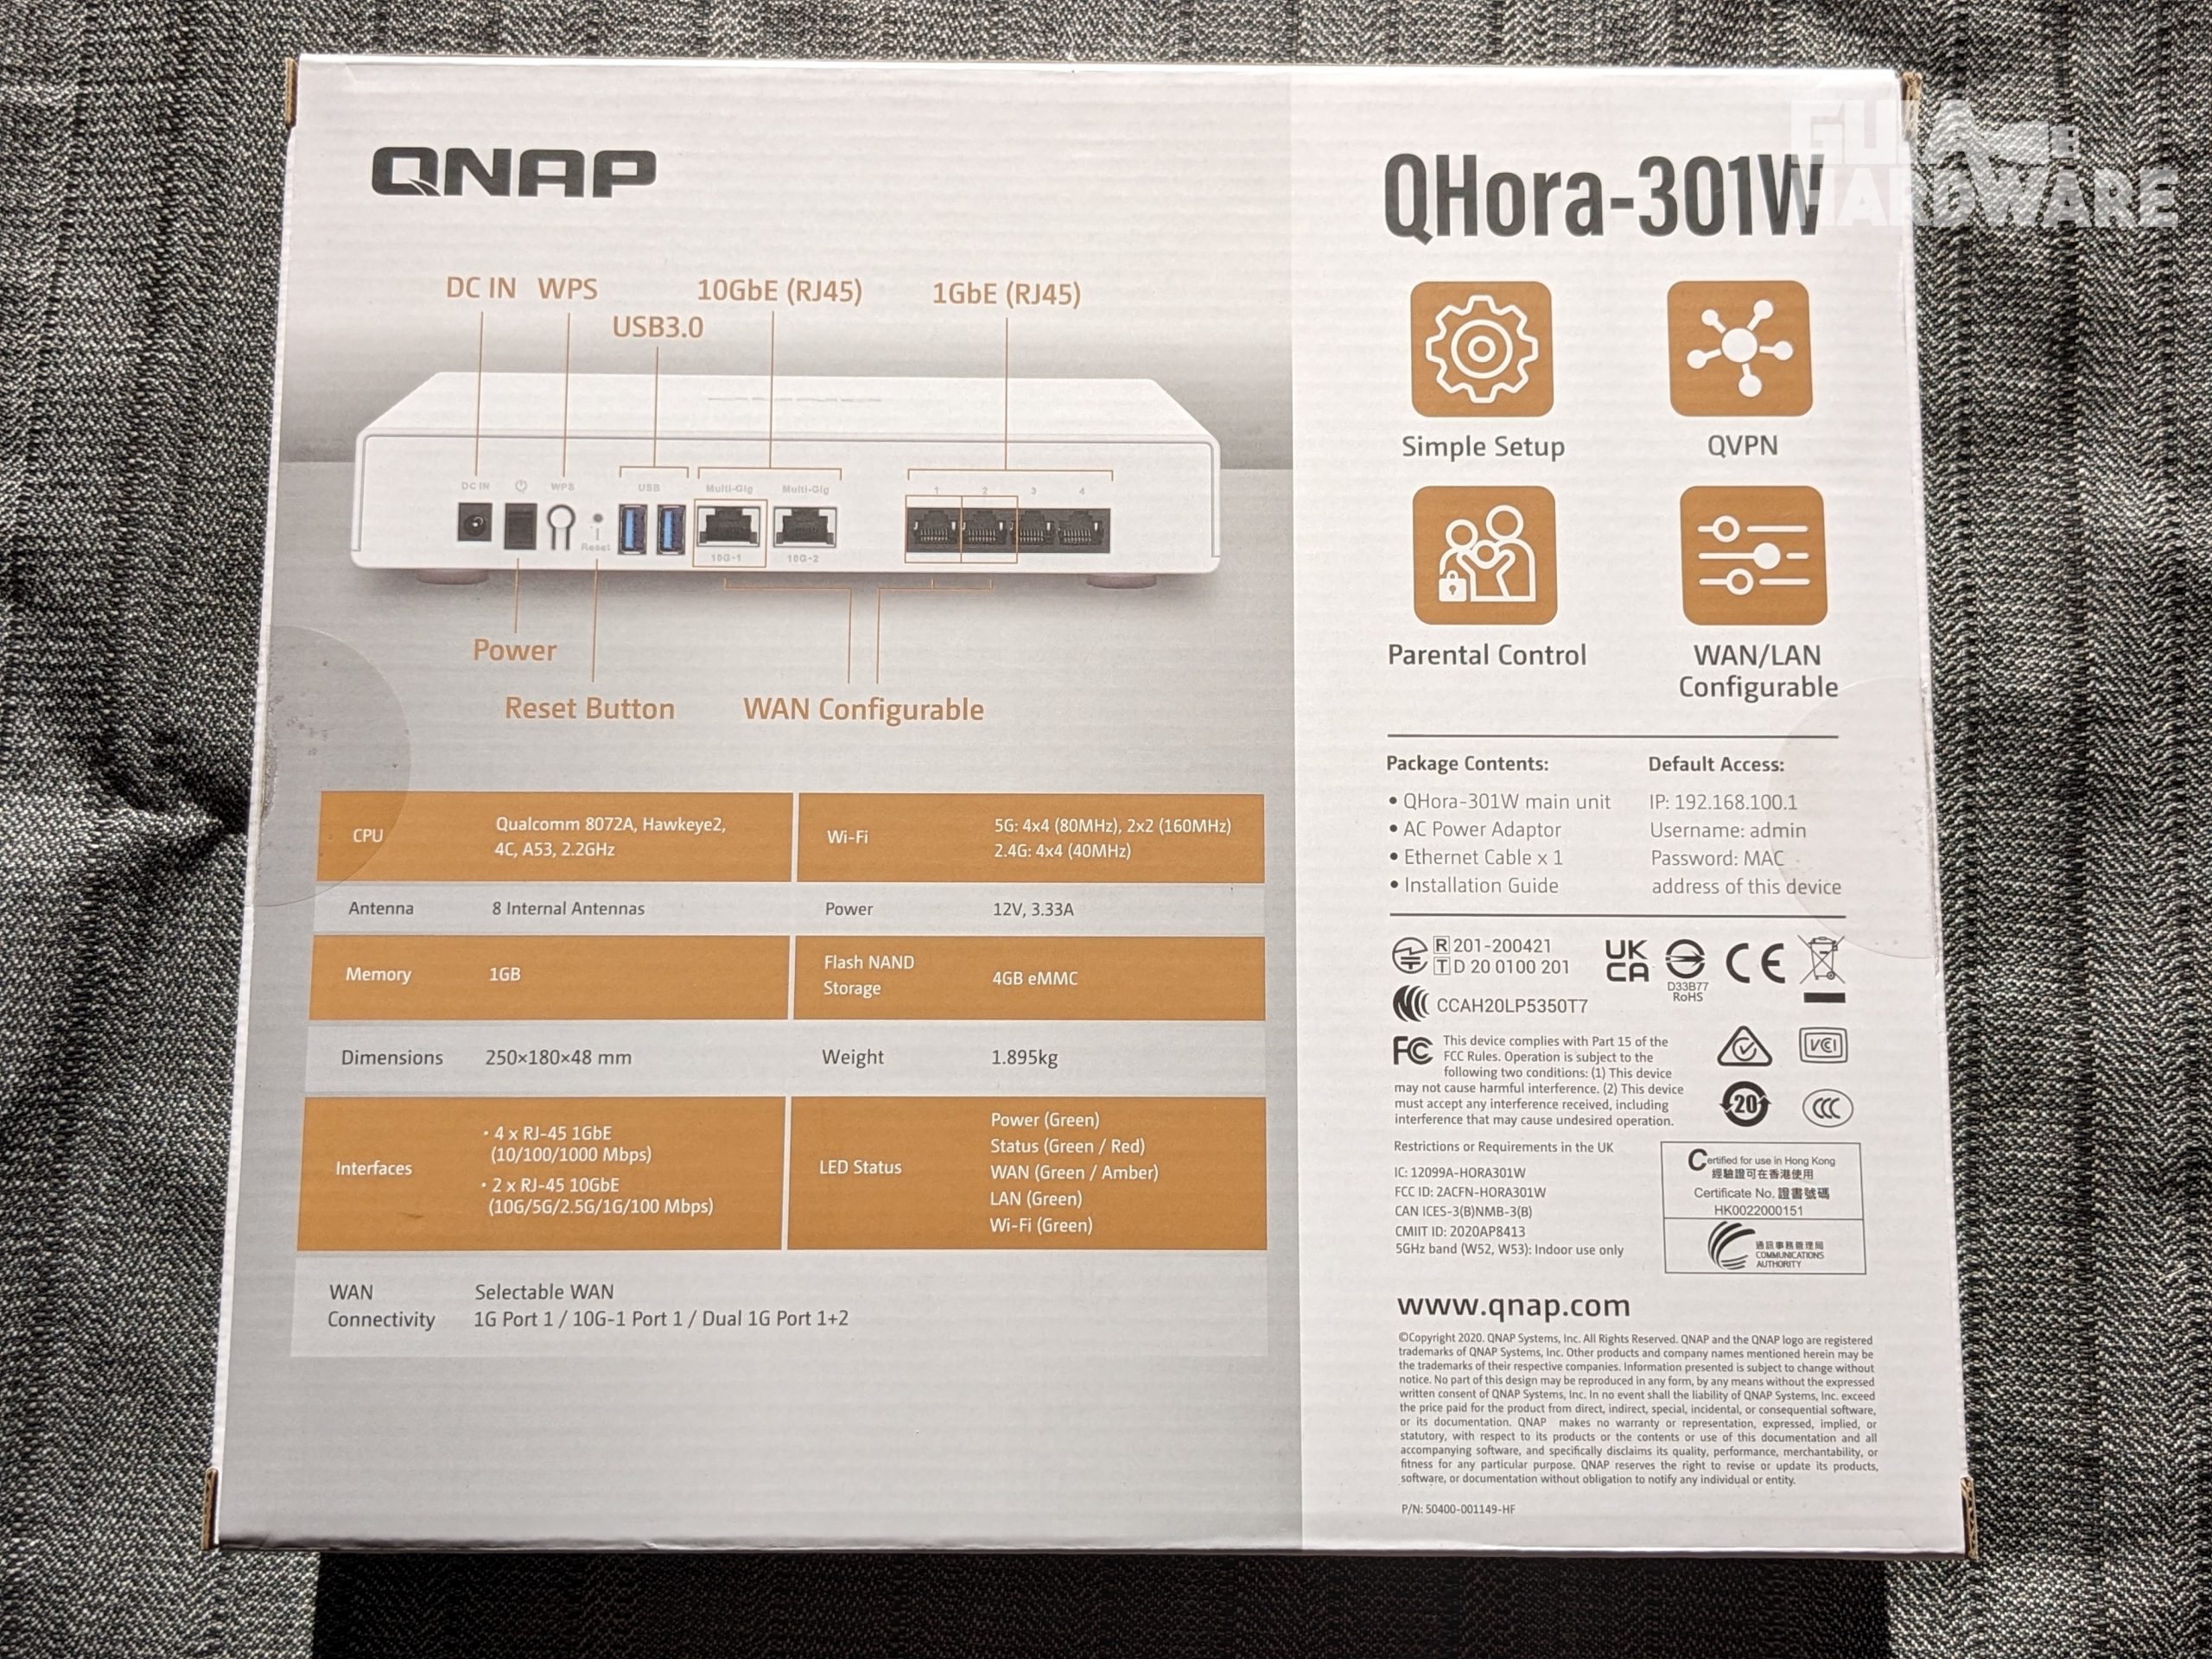 QNAP Qhora-301W